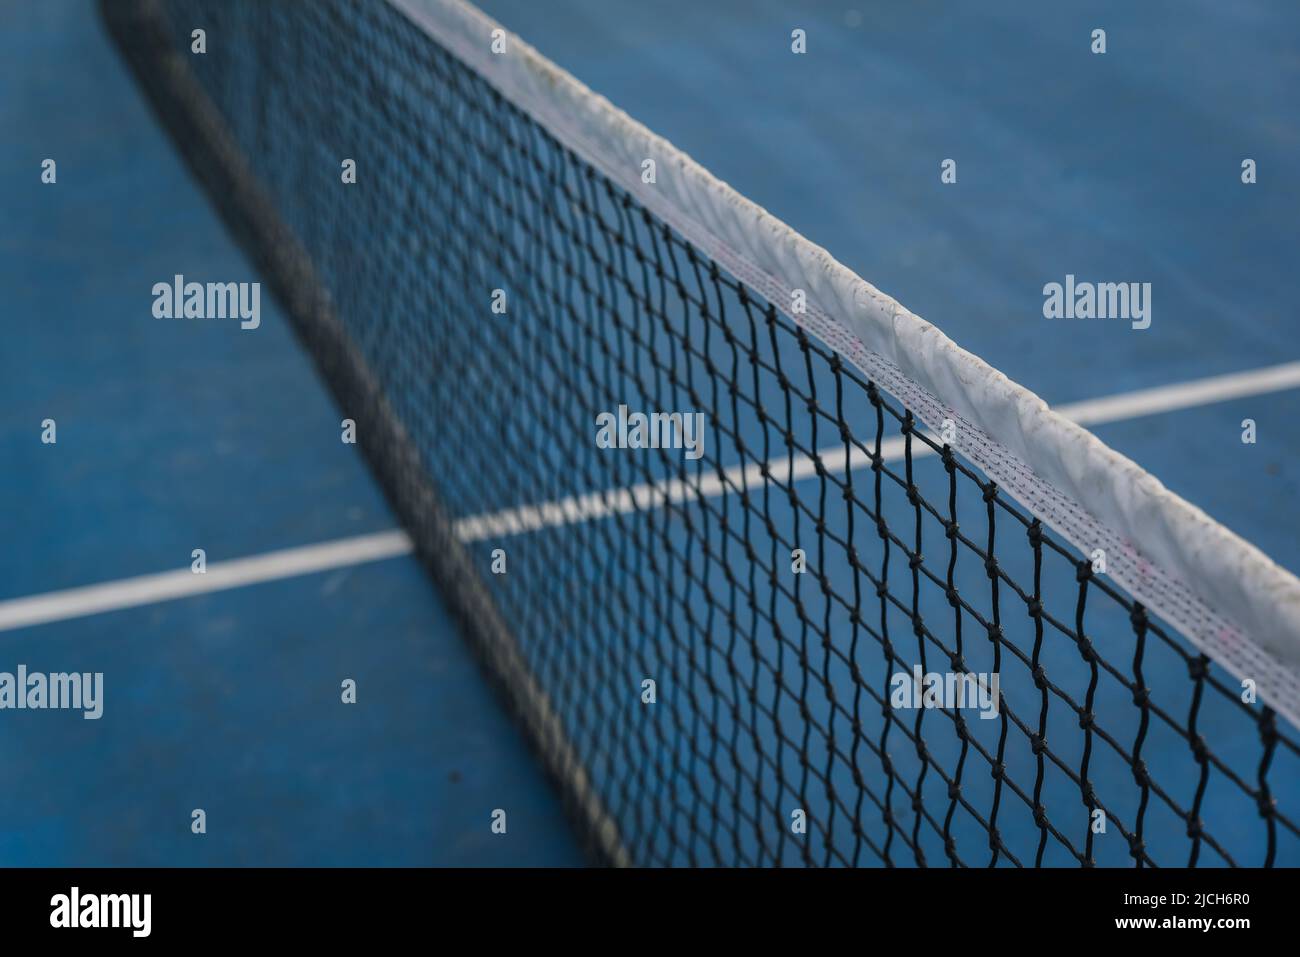 Primo piano di rete da tennis in nylon su un campo blu. Foto Stock